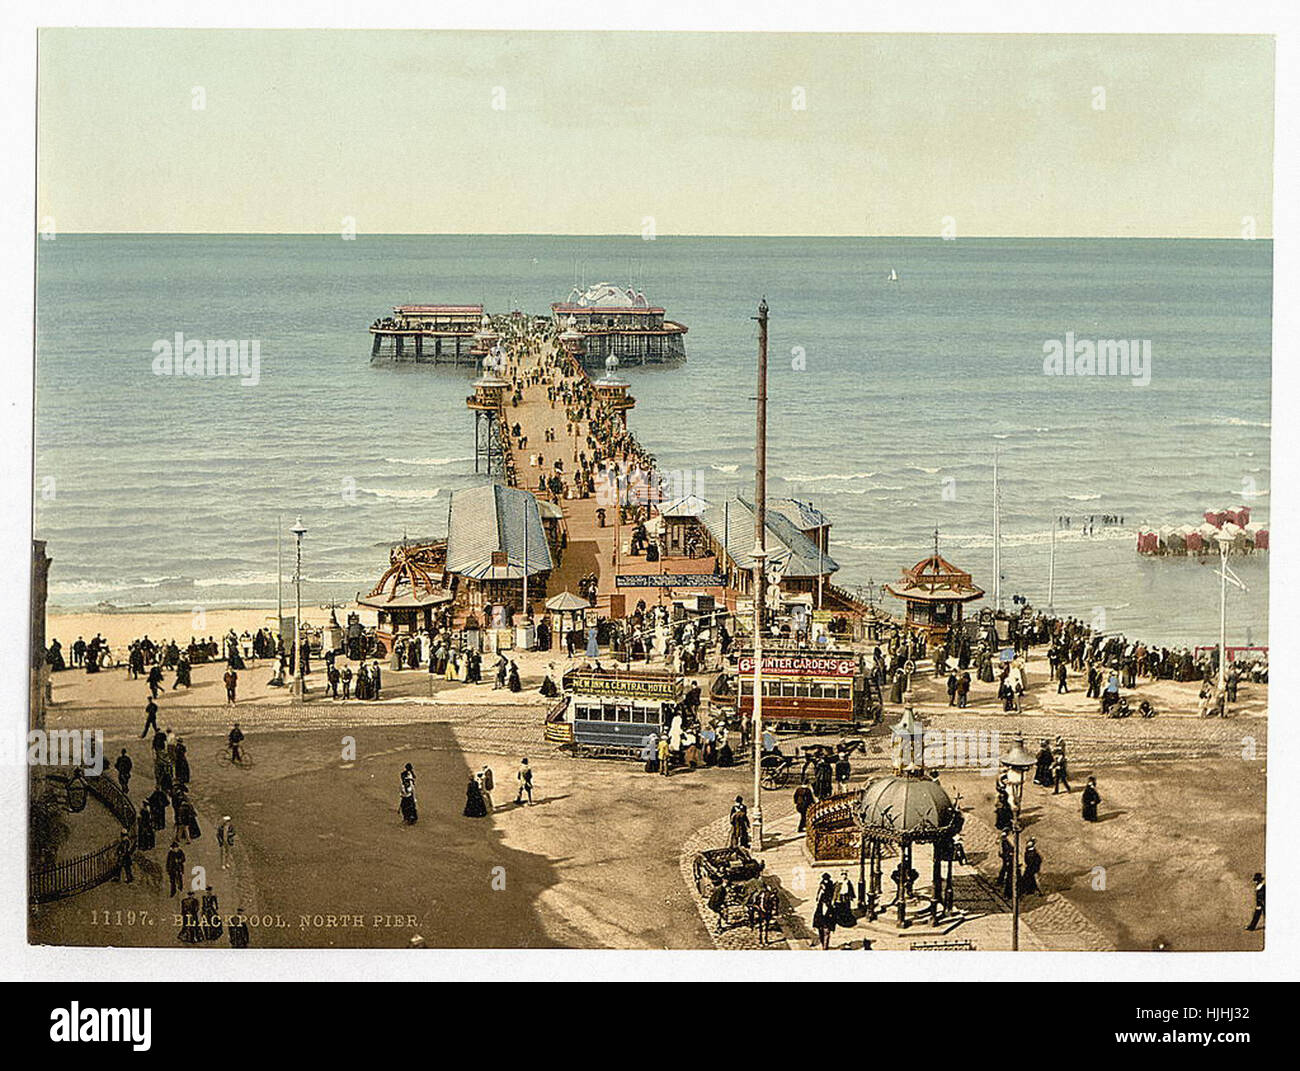 Le North Pier, Blackpool, Angleterre - Photochrom xixème siècle Banque D'Images